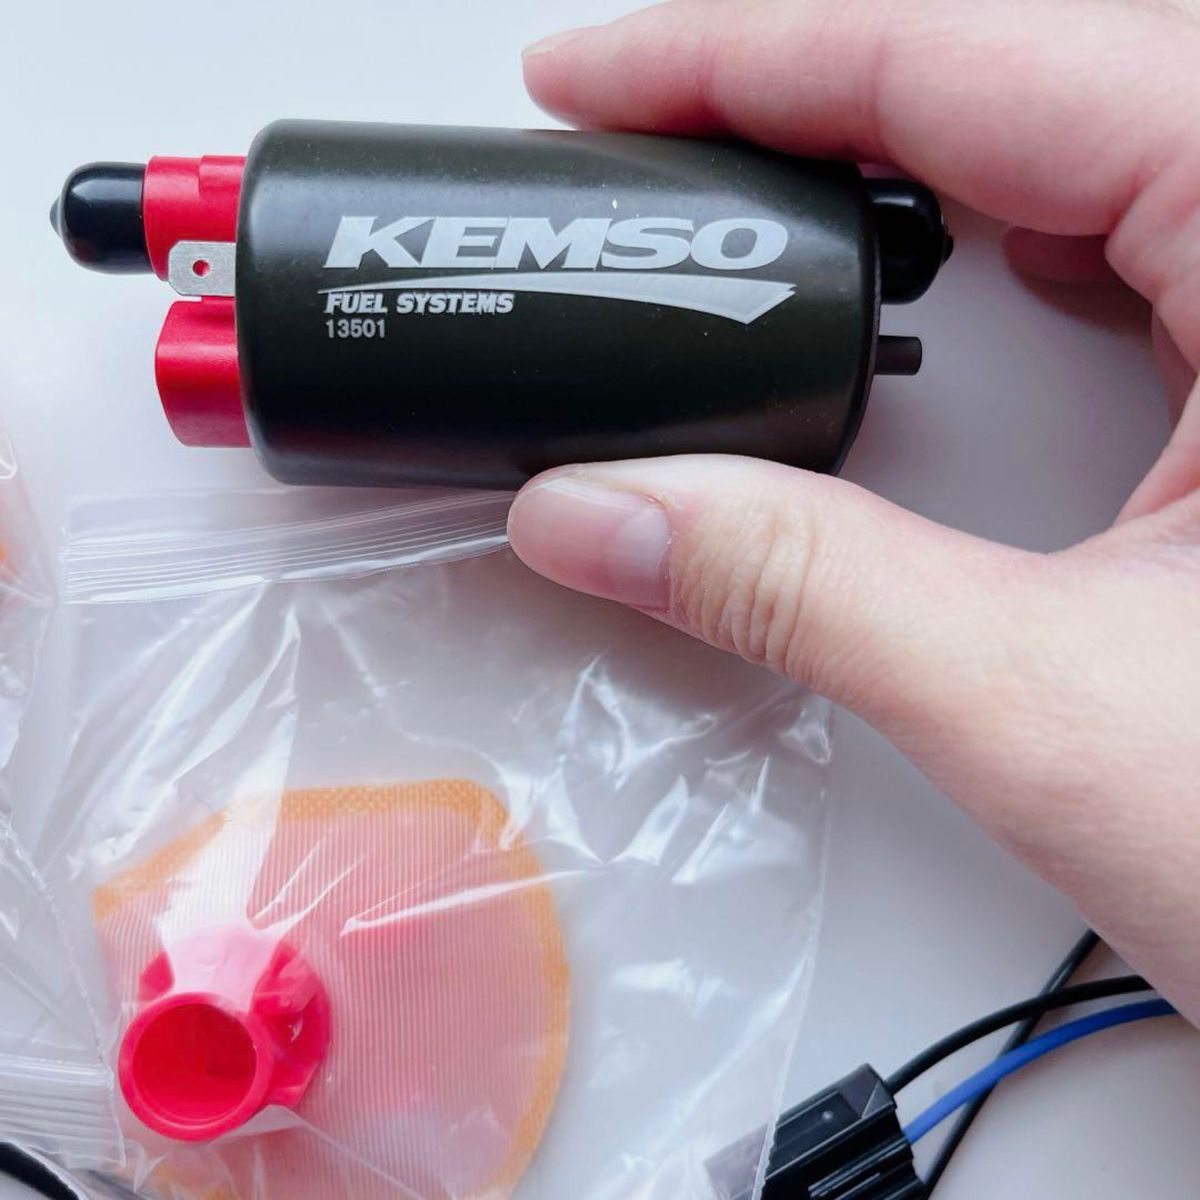 KEMSO 13501 OEM 交換タンク燃料ポンプ 35mm